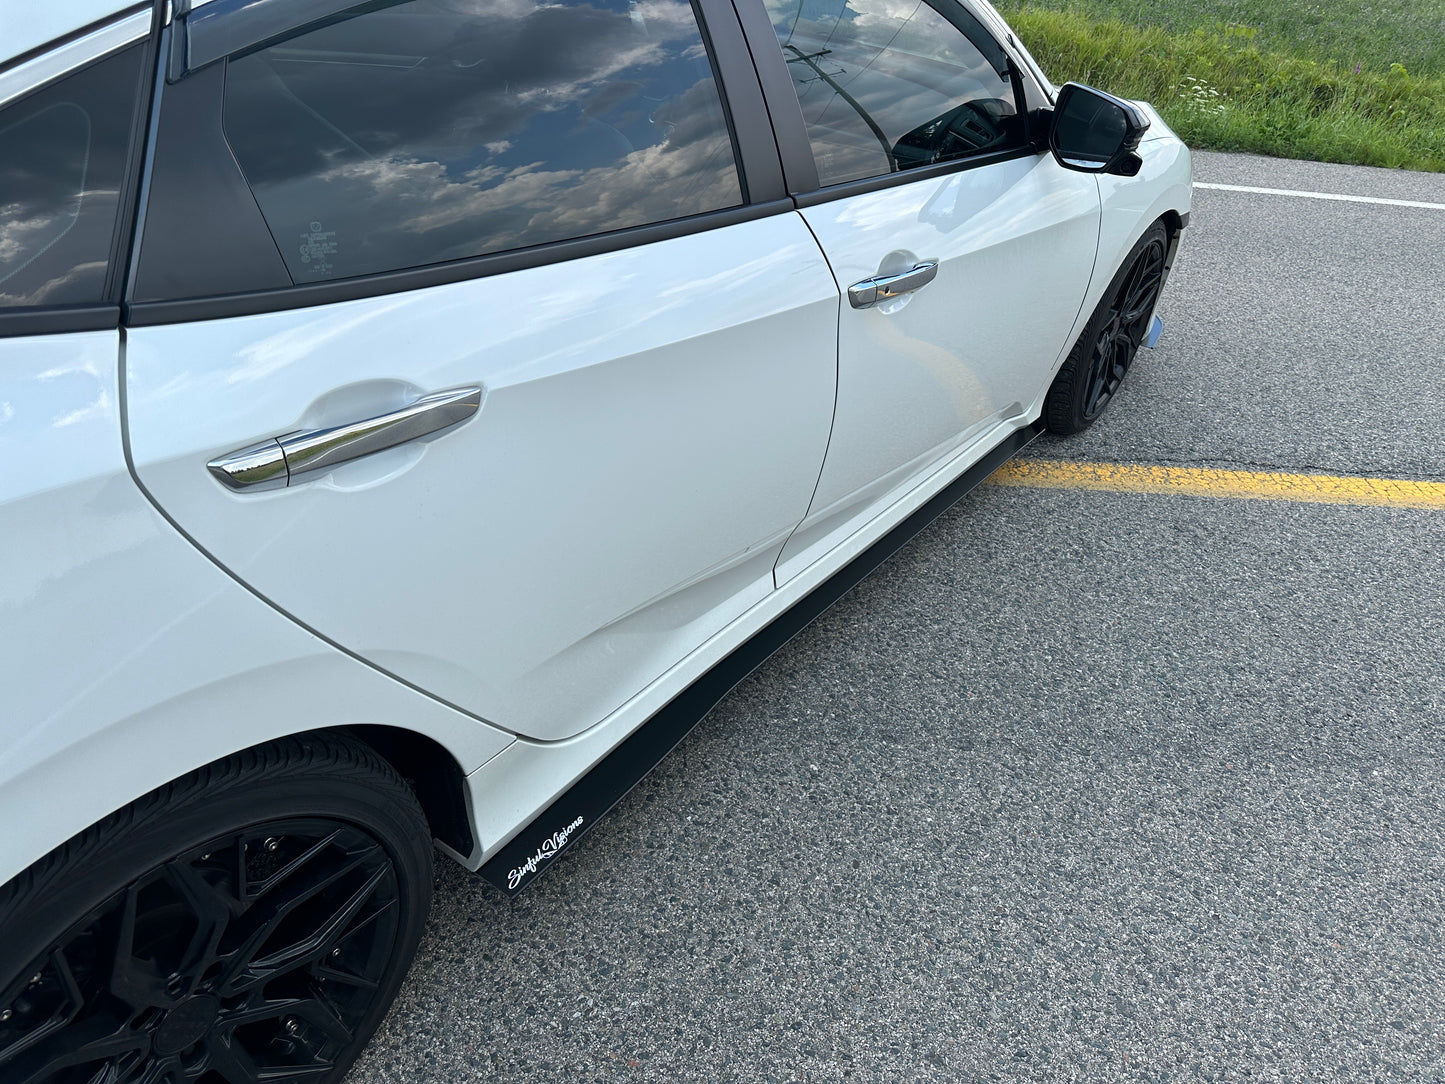 2019 Honda Civic Sedan Stage 2 Kit